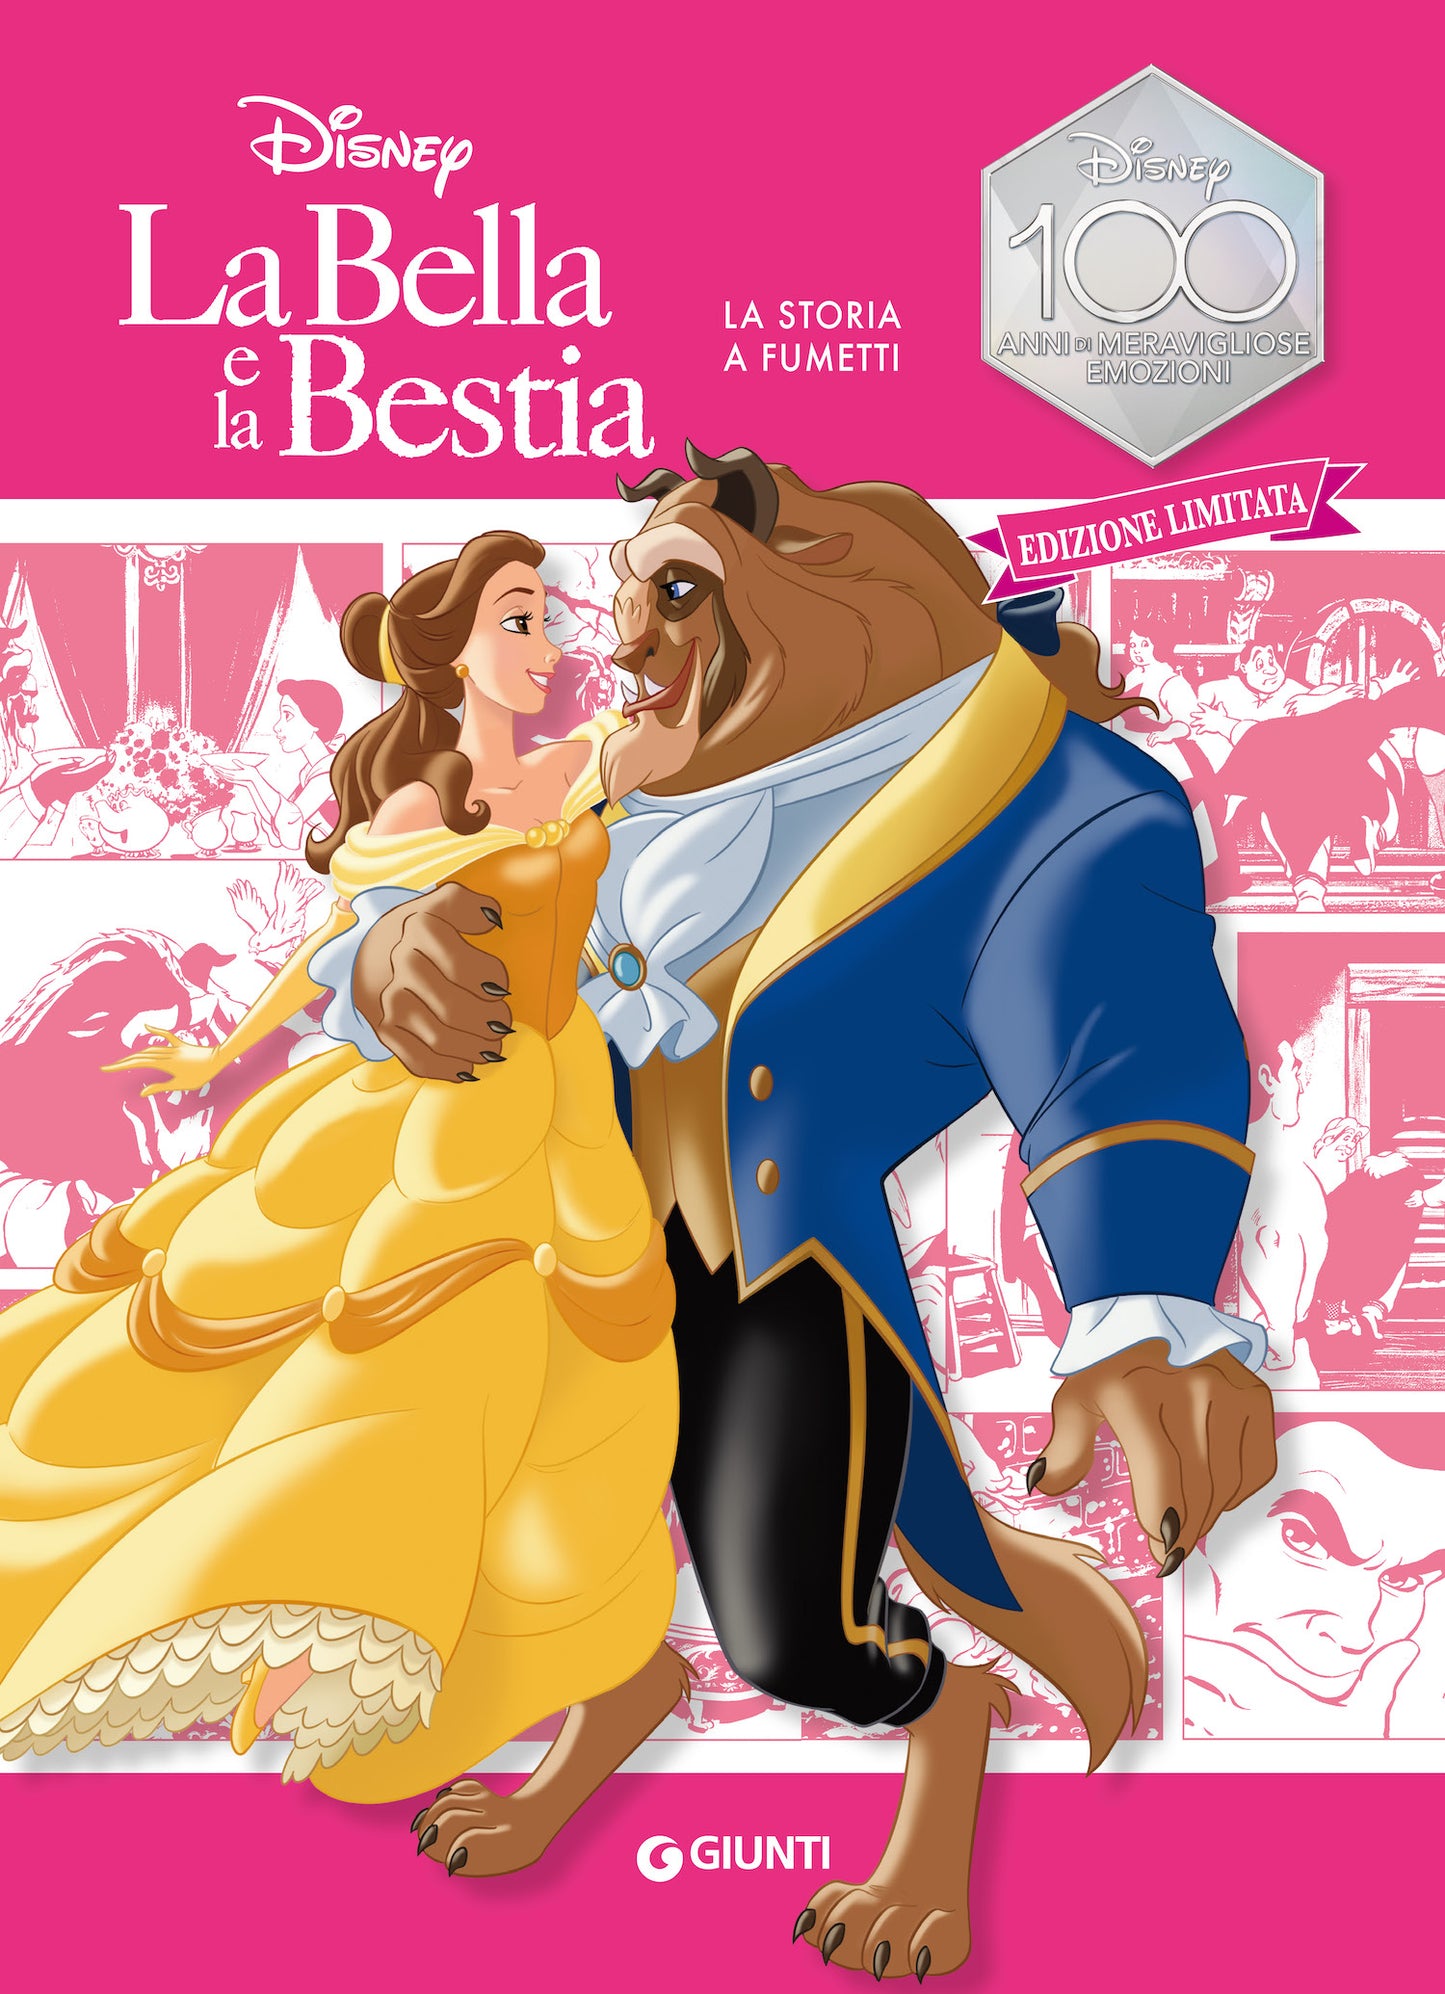 La Bella e la Bestia La storia a fumetti Edizione limitata. Disney 100 Anni di meravigliose emozioni